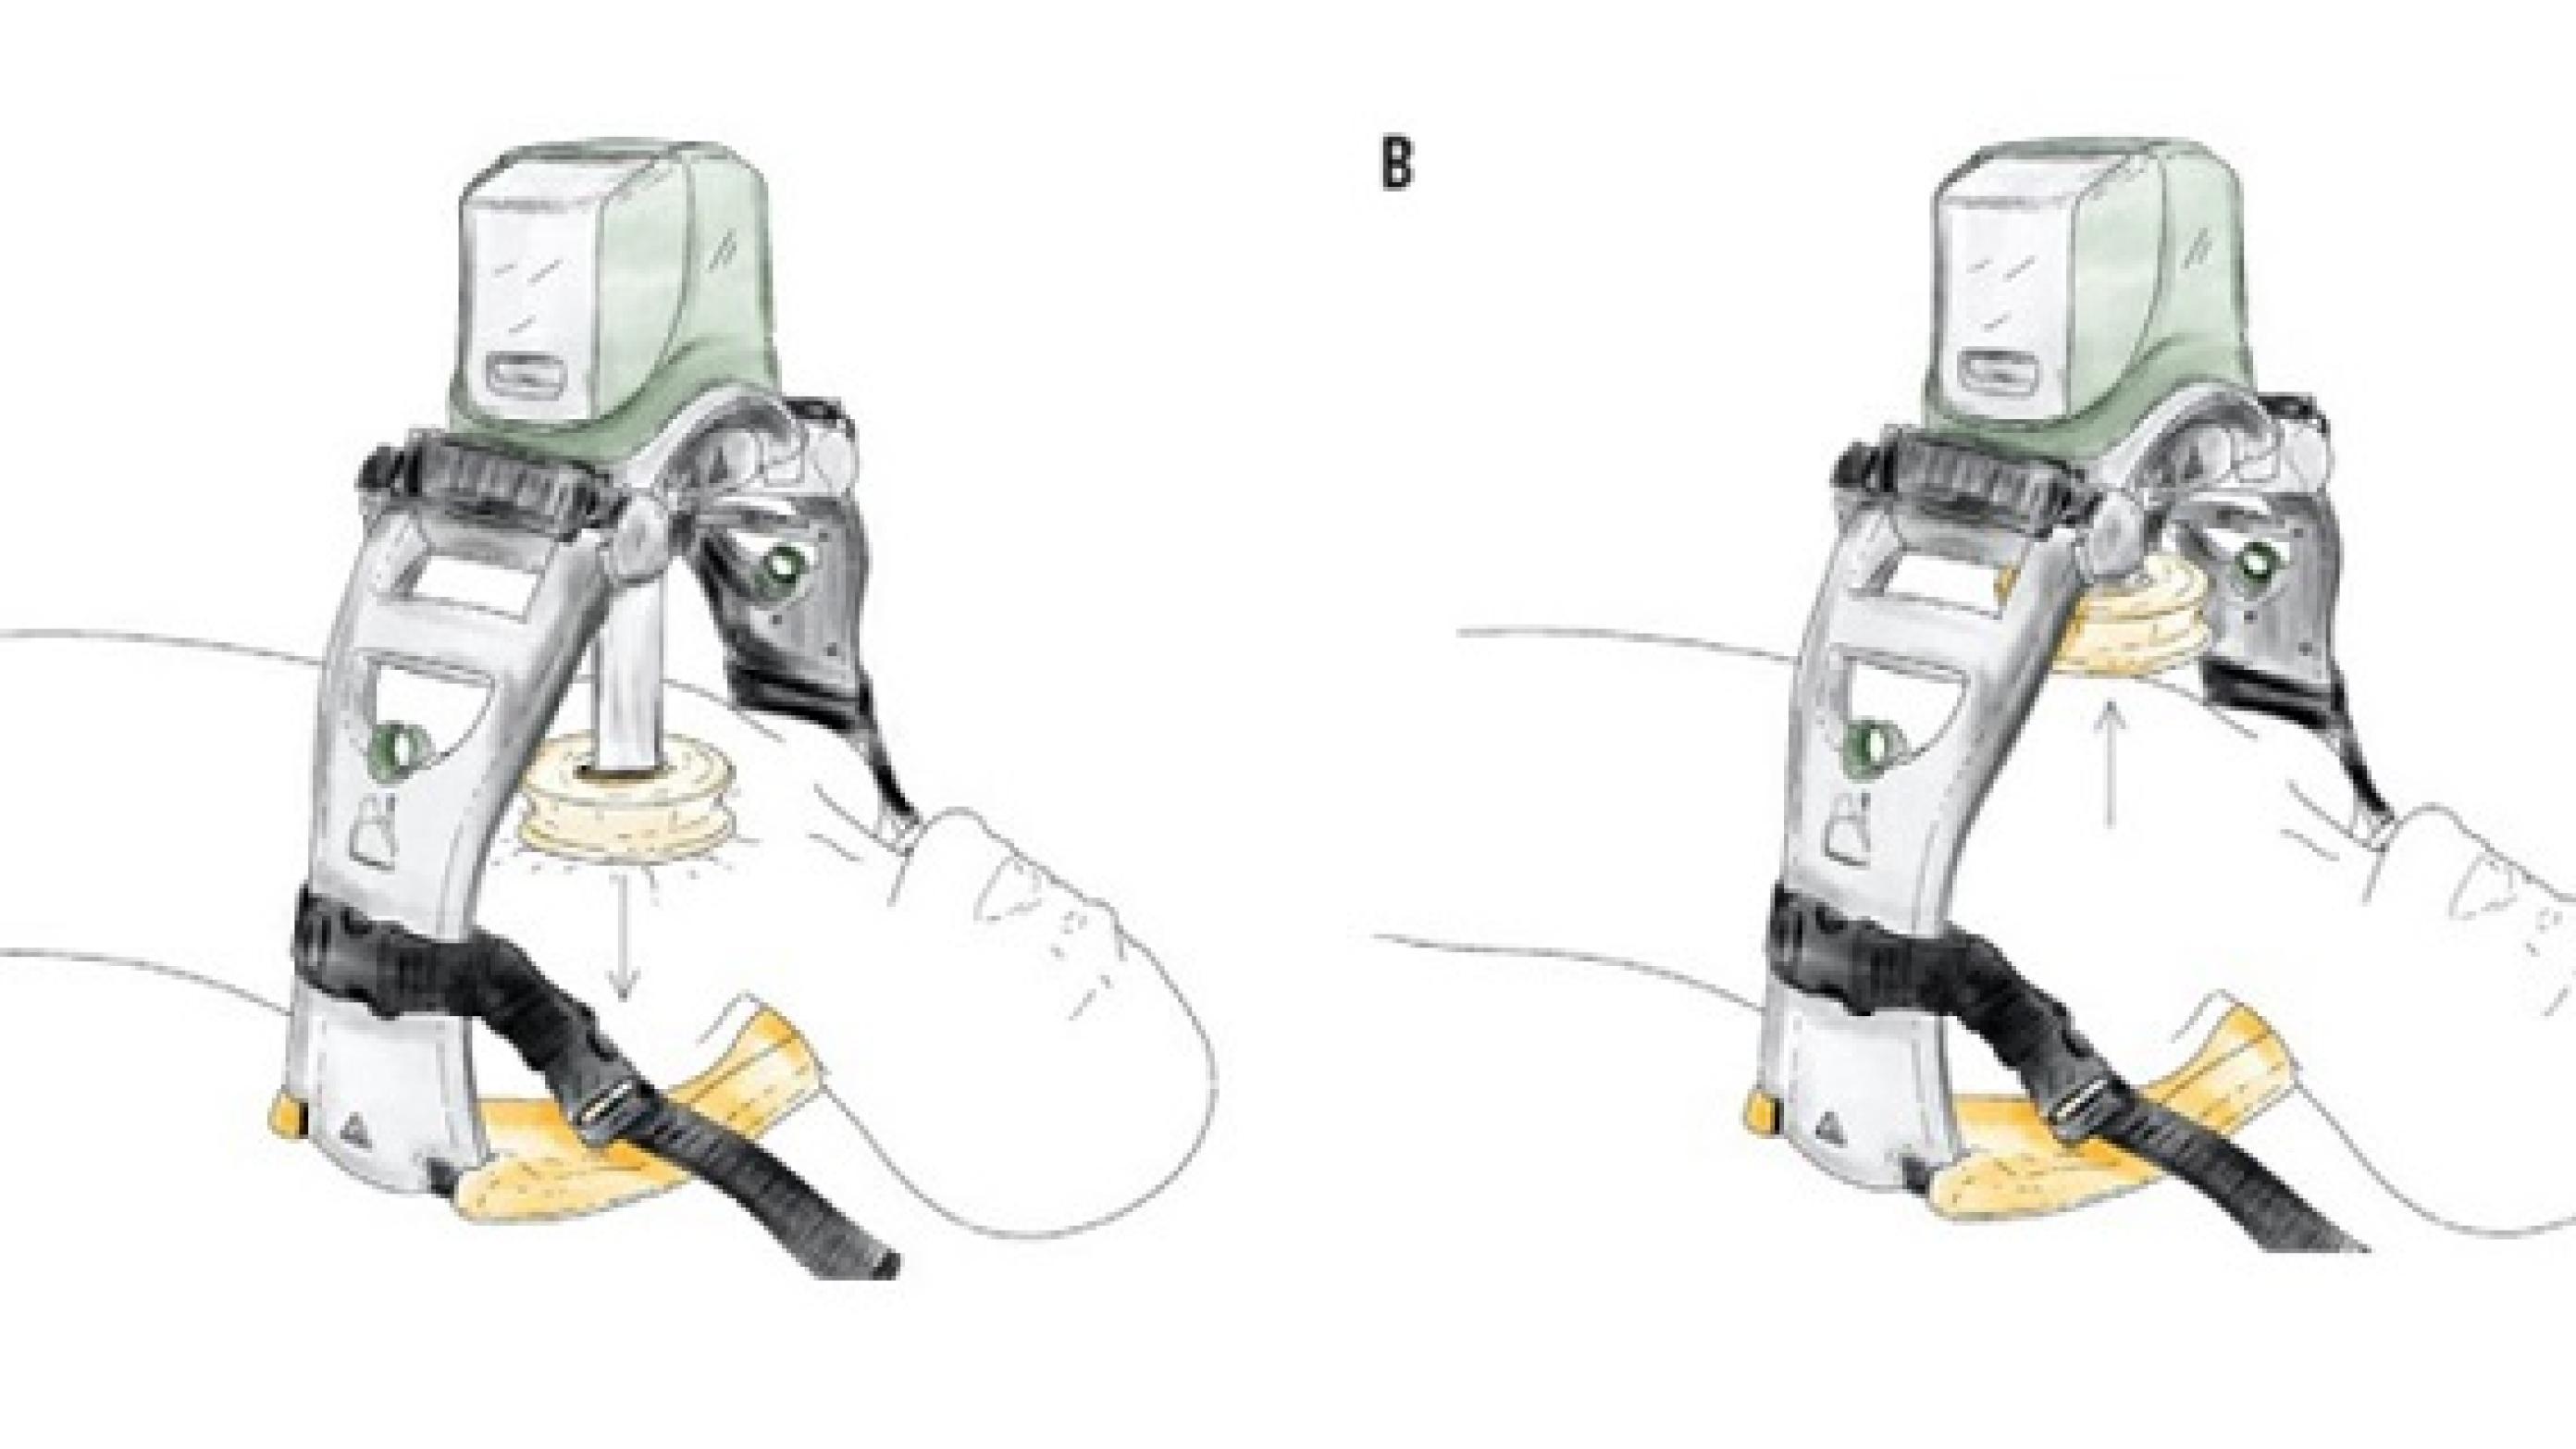 Stempelapparat. A. Stemplet komprimerer thorax. B. Stemplet retraheres, så der opnås recoil. (Illustration af Behaviour CPH).